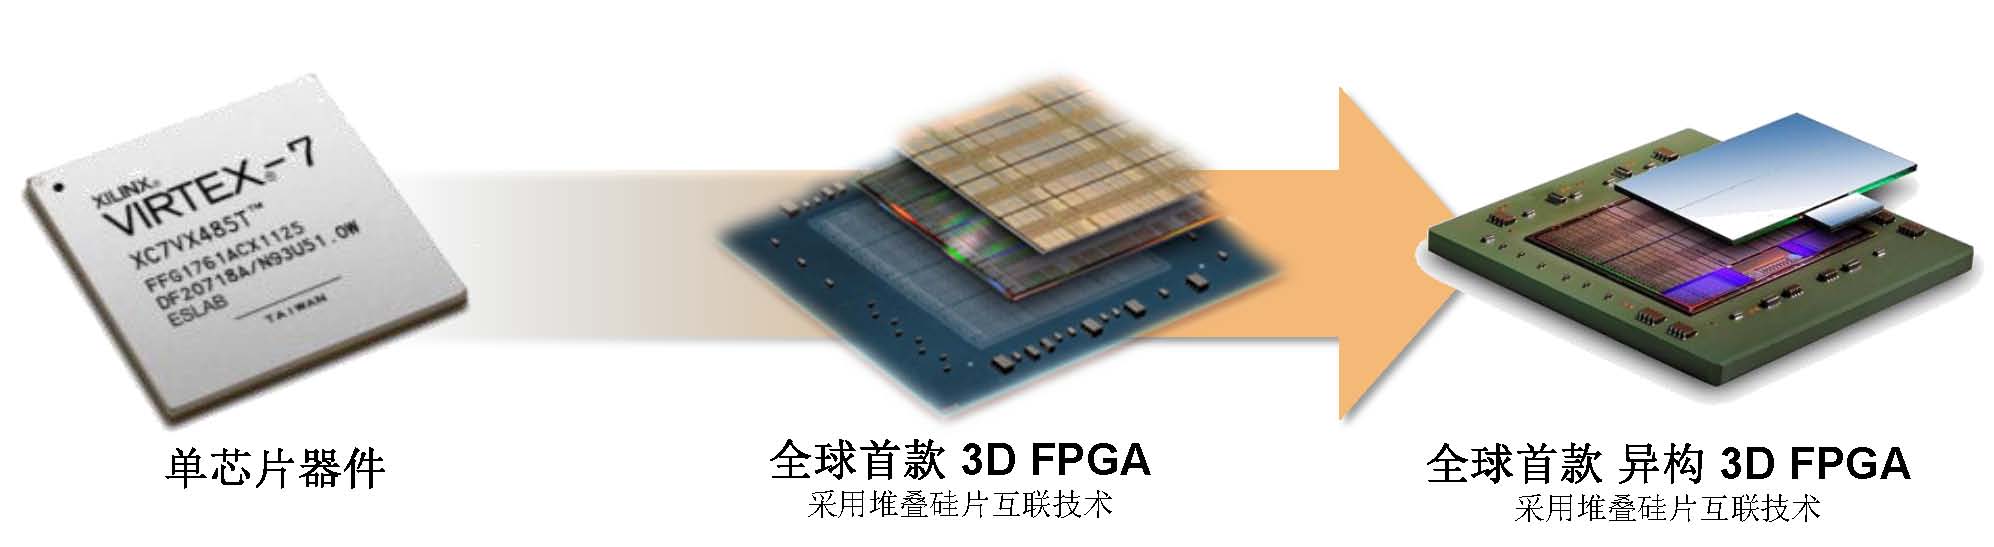 赛灵思异构3D FPGA难在哪儿